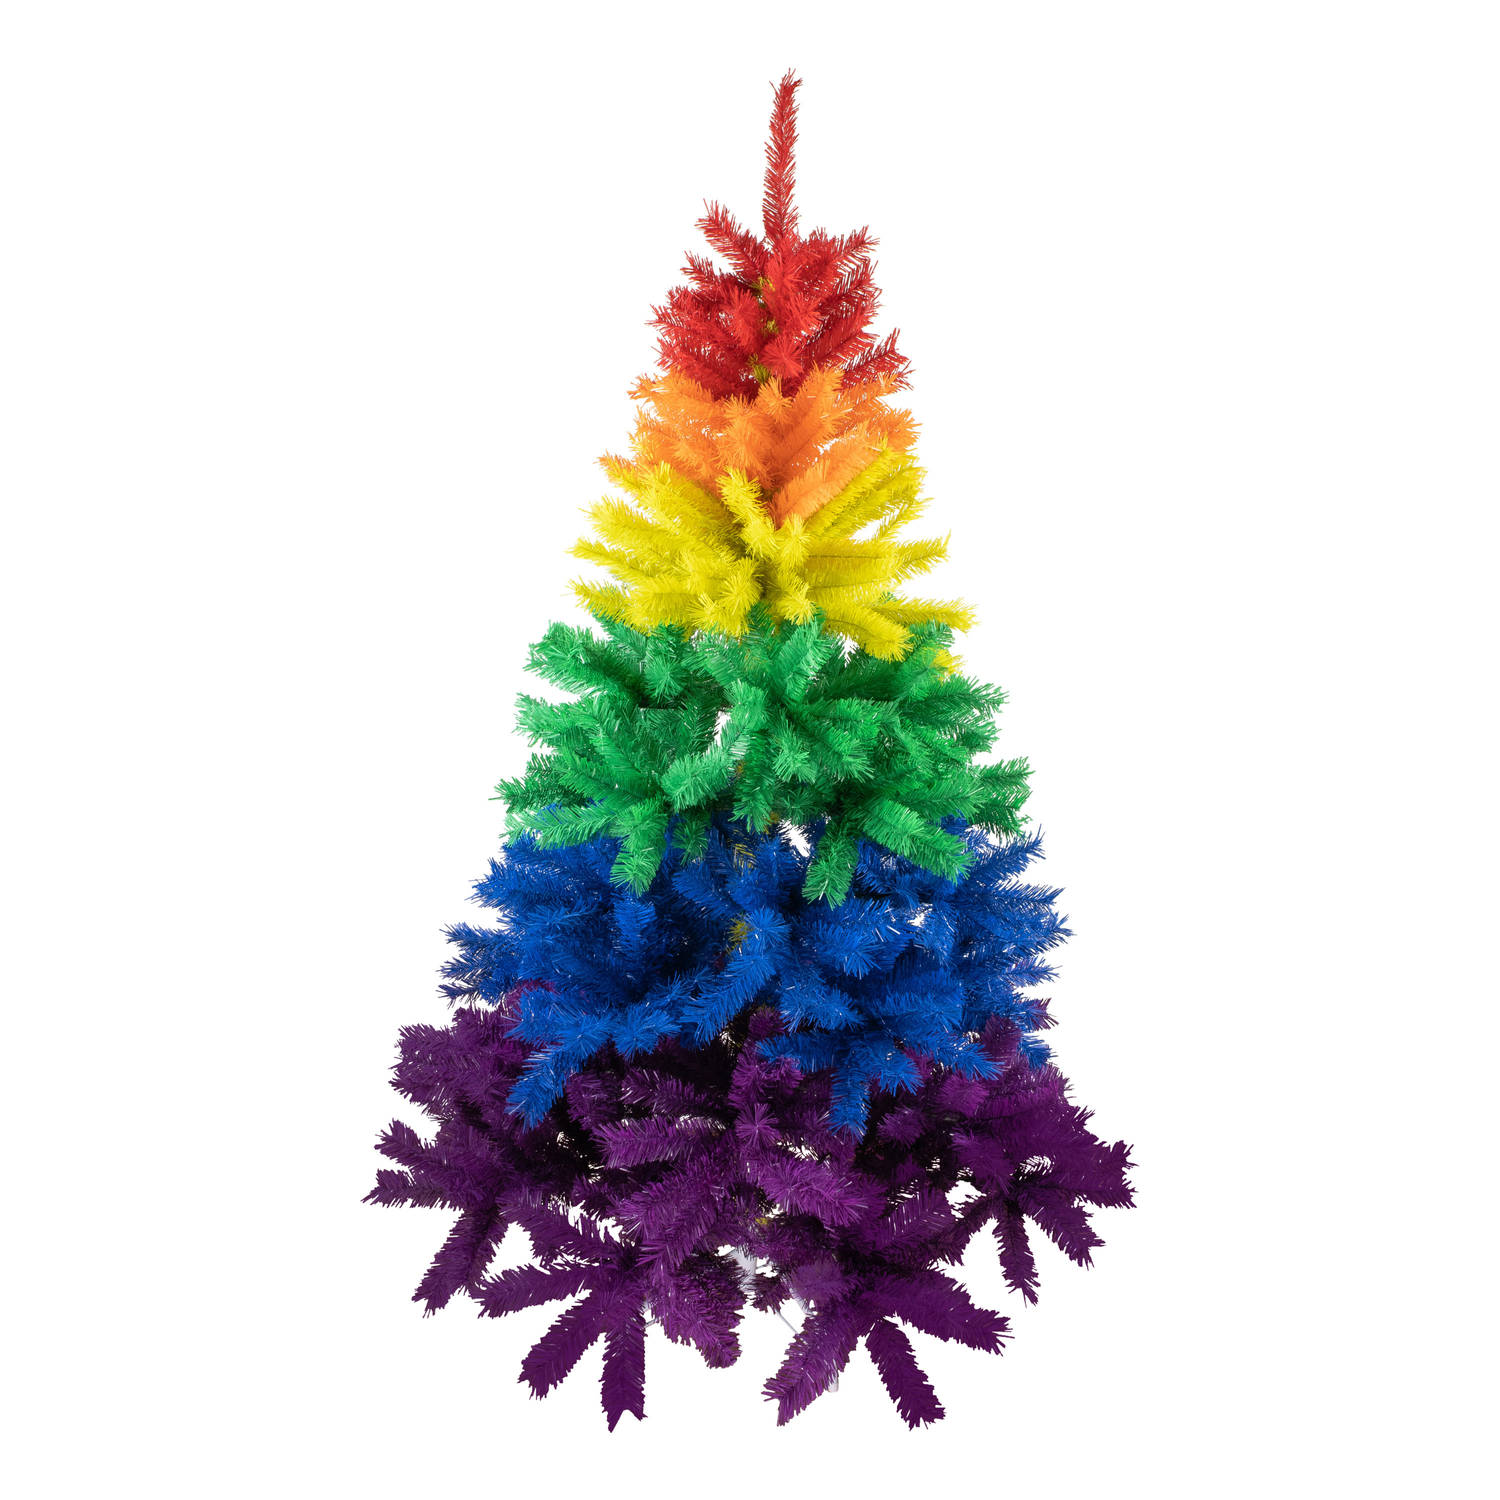 R en W kunst kerstboom regenboog kleuren H170 cmA - kunststof Kunstkerstboom